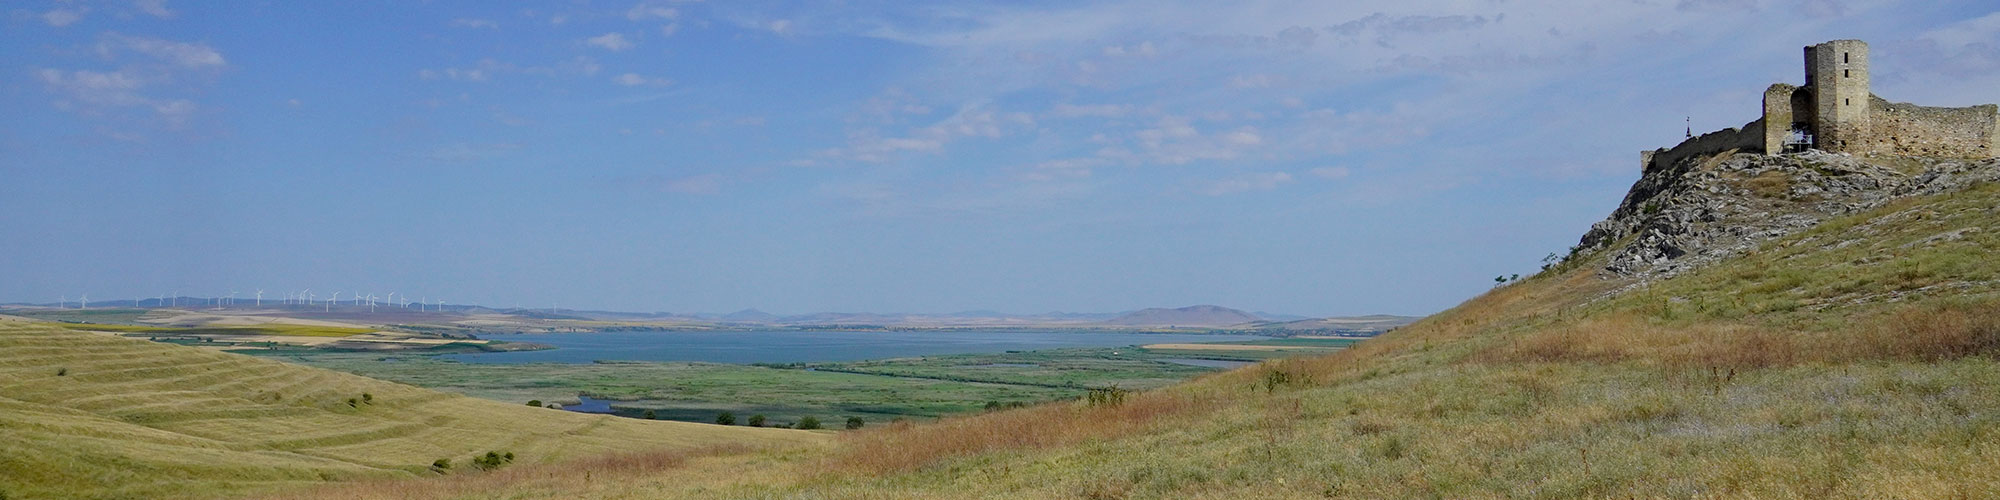 View of the Danube Delta